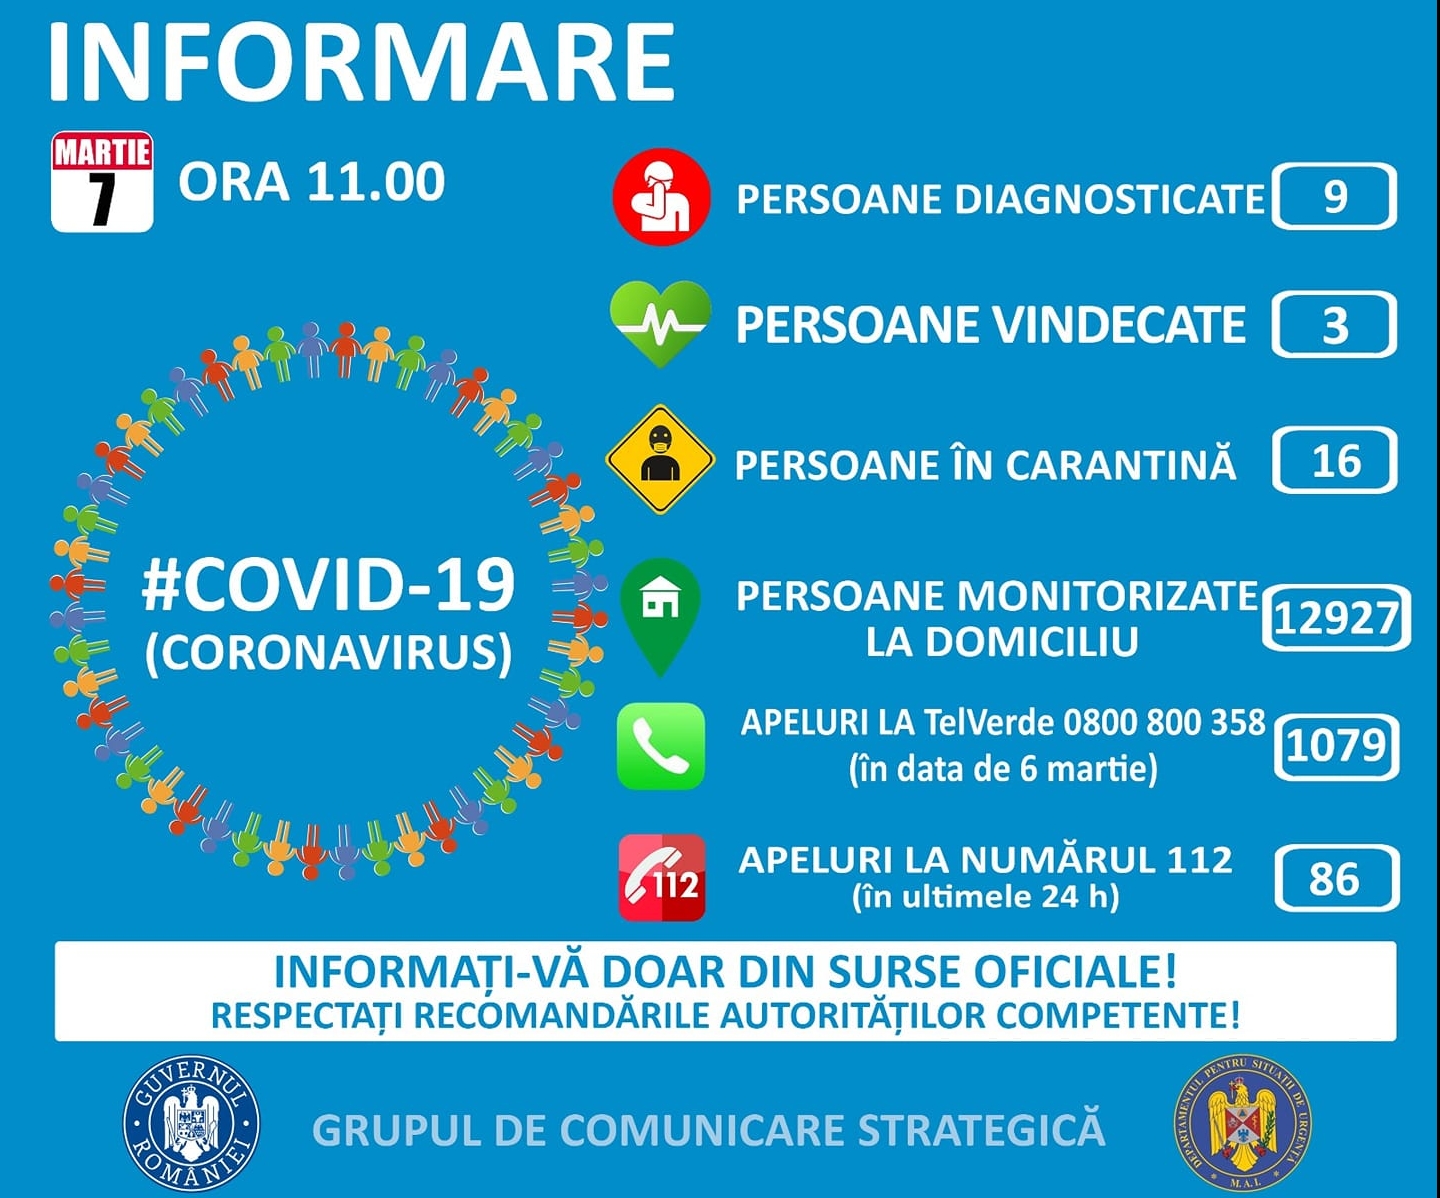 Cazuri de coronavirus în România sâmbătă 7 martie